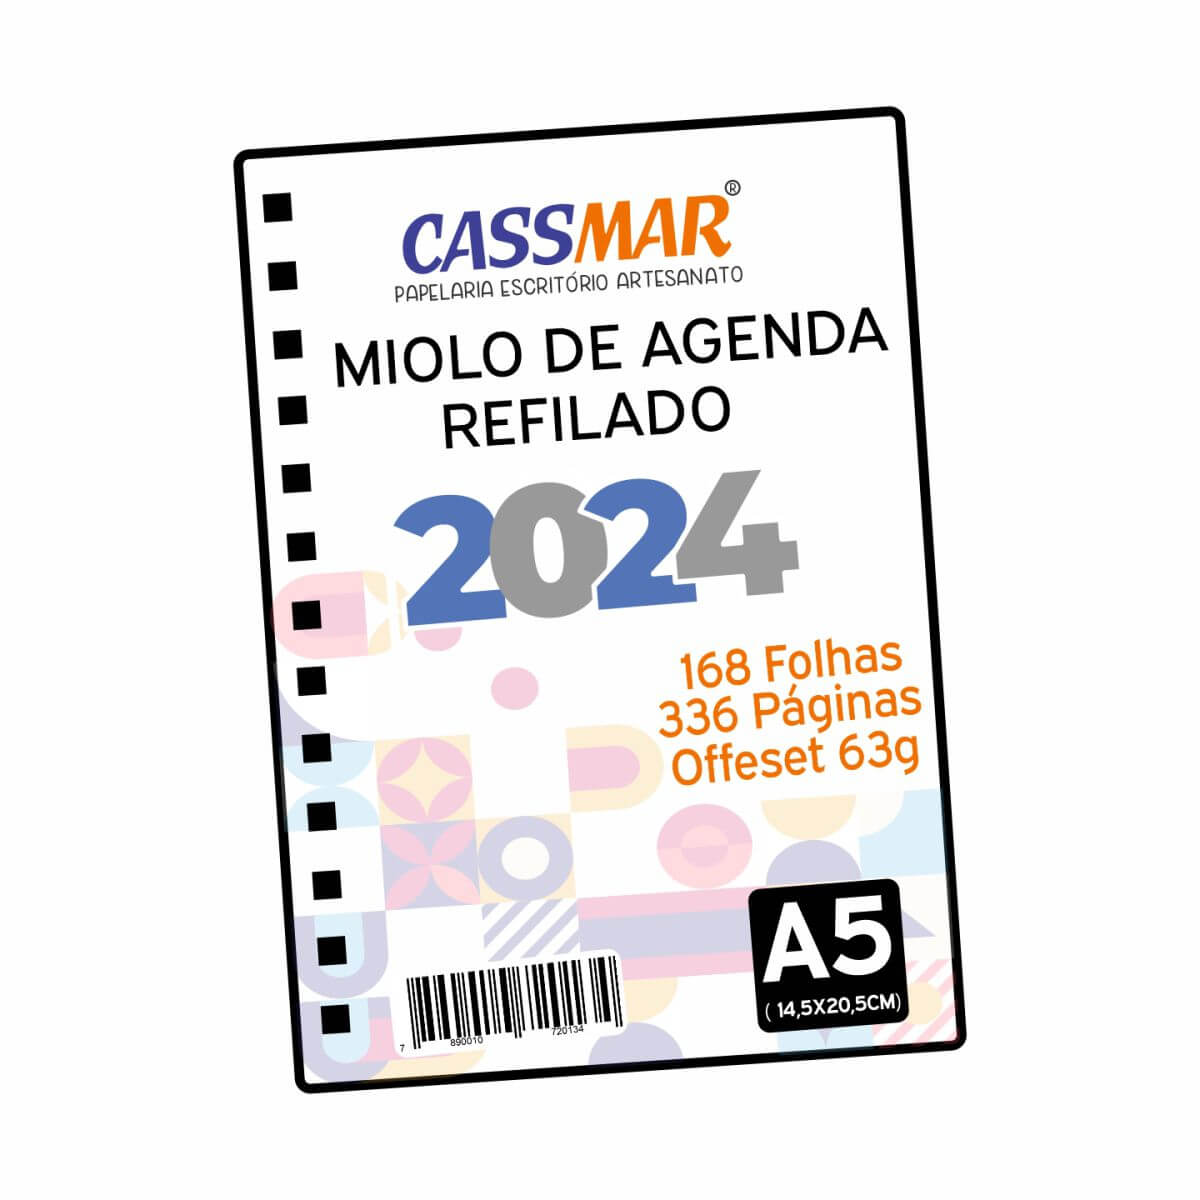 Miolo de agenda 2024 Refilado A5 (14,5X20,5cm) com 168 folhas